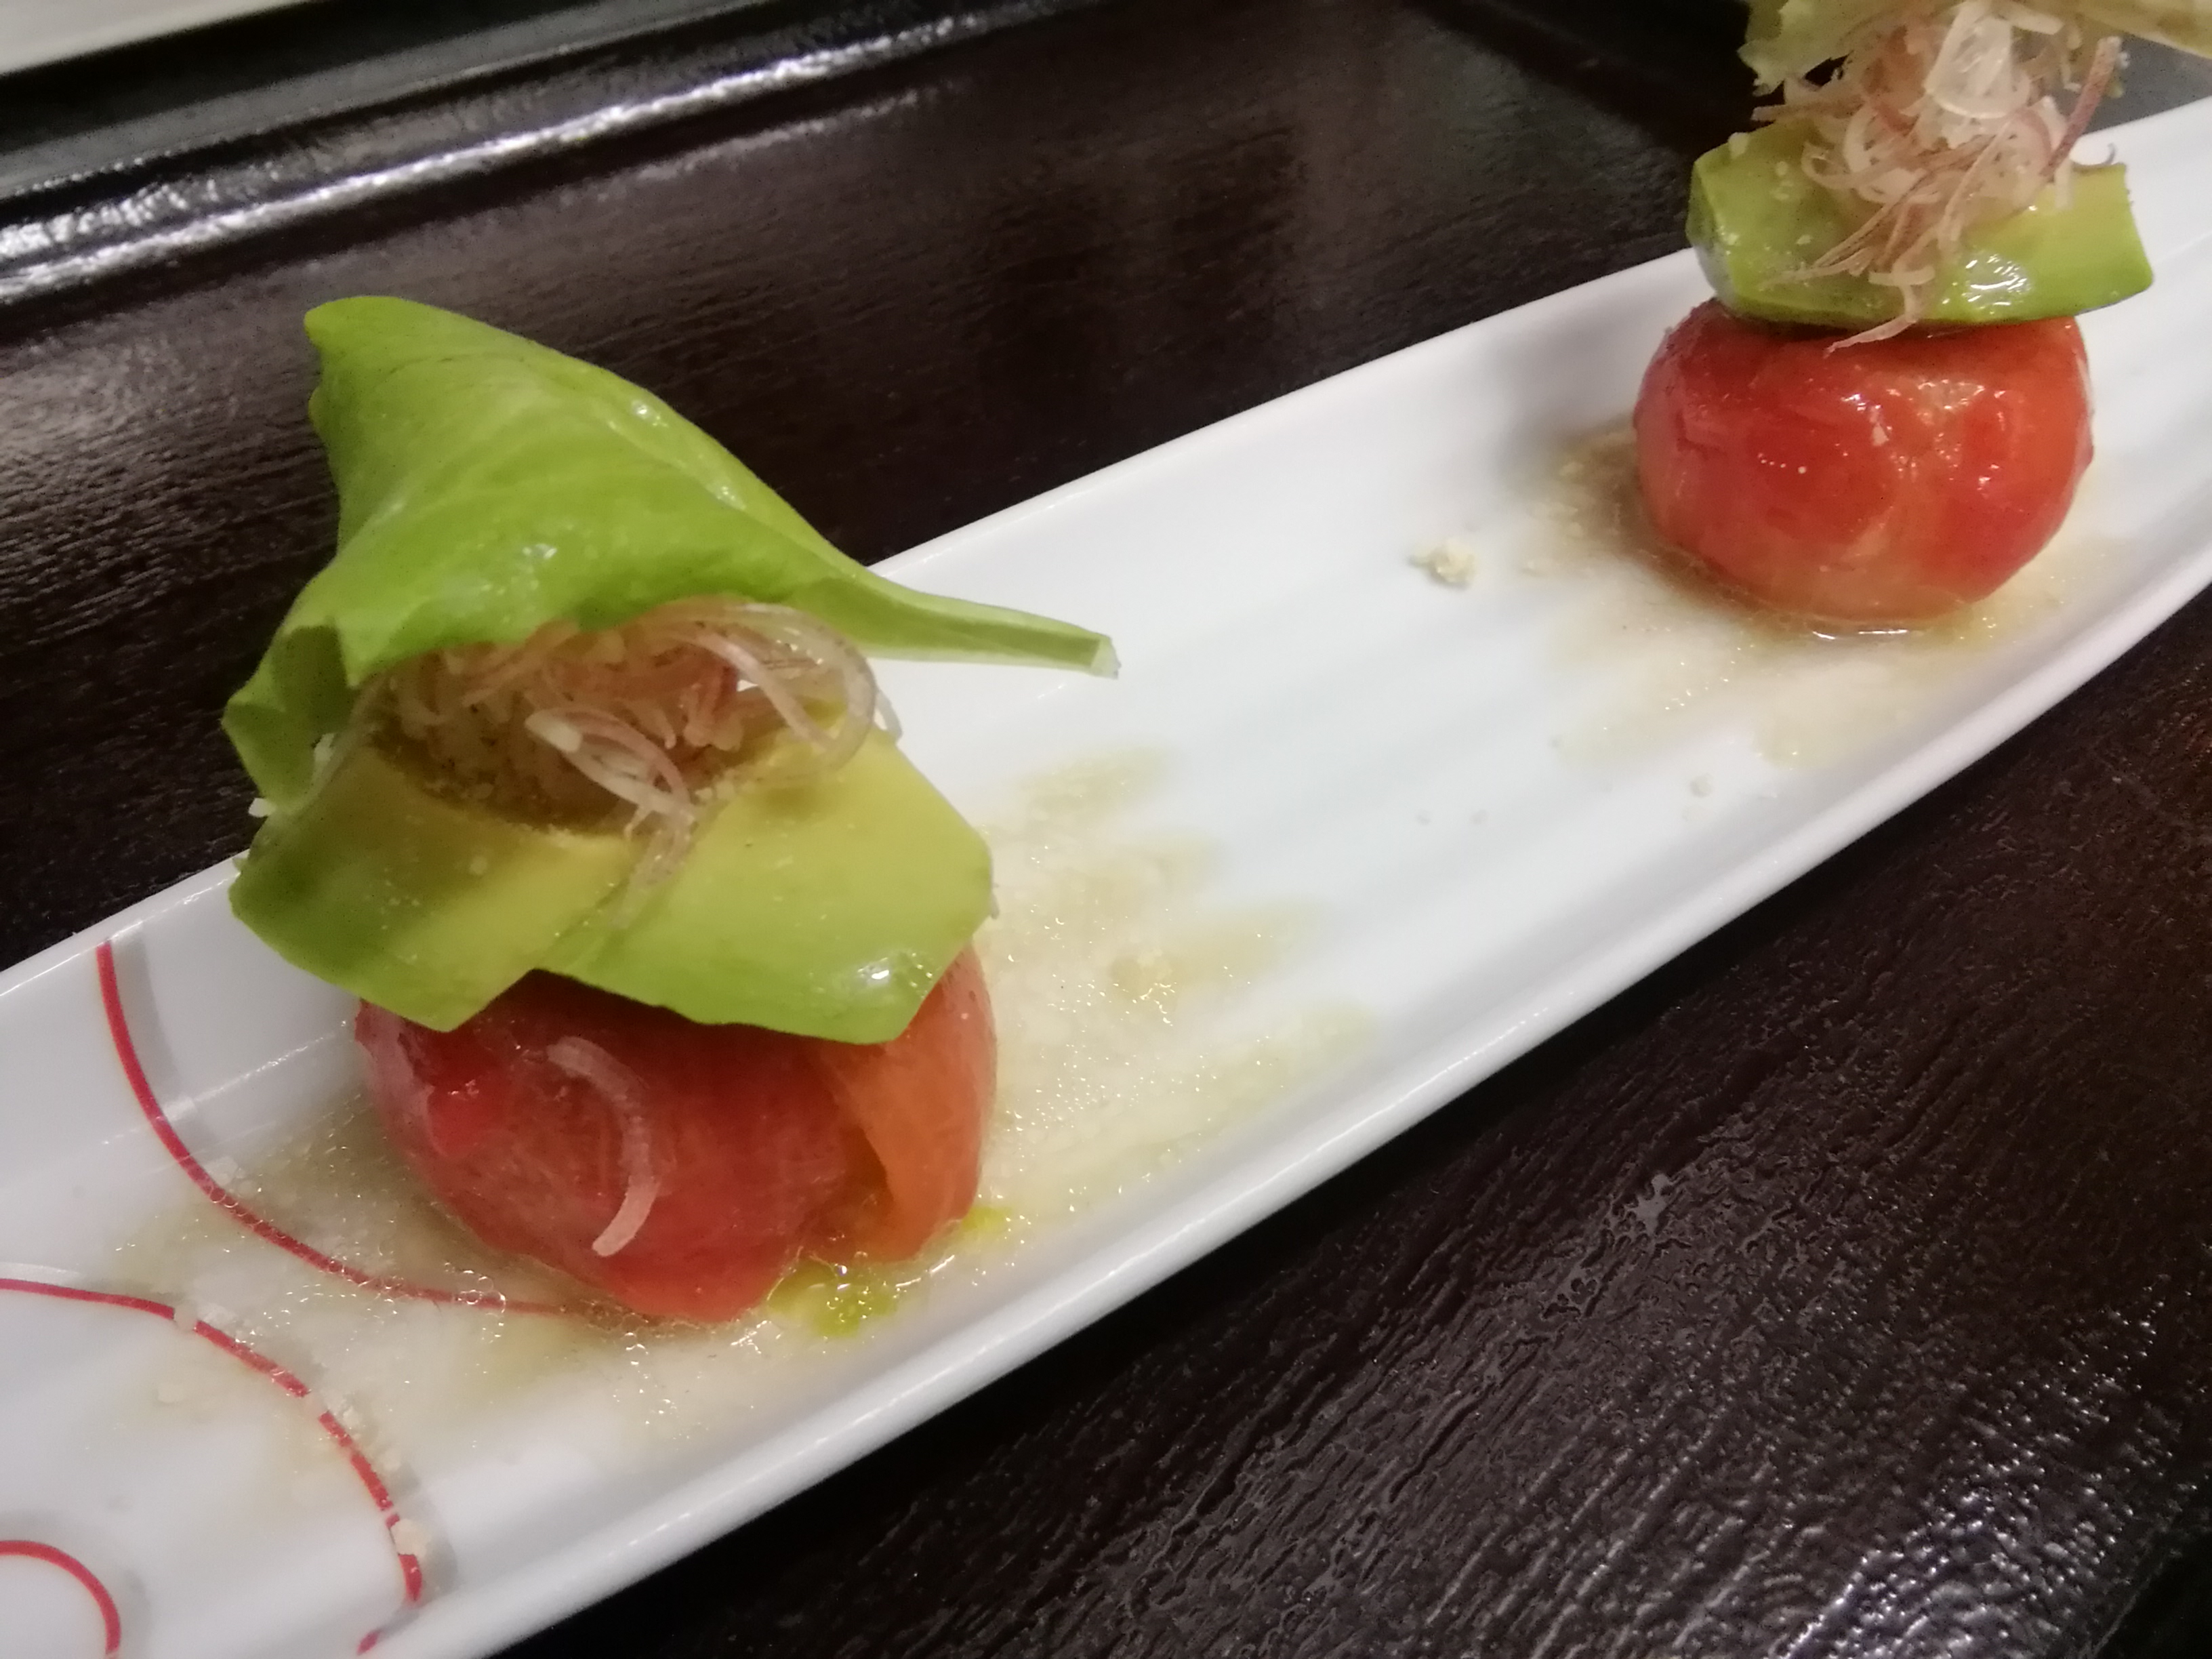 フルーツトマトとアボカドの山葵ドレッシングです
静岡のフルーツトマトと言えばアメーラです。これを食べたら他のトマトは食べられません。